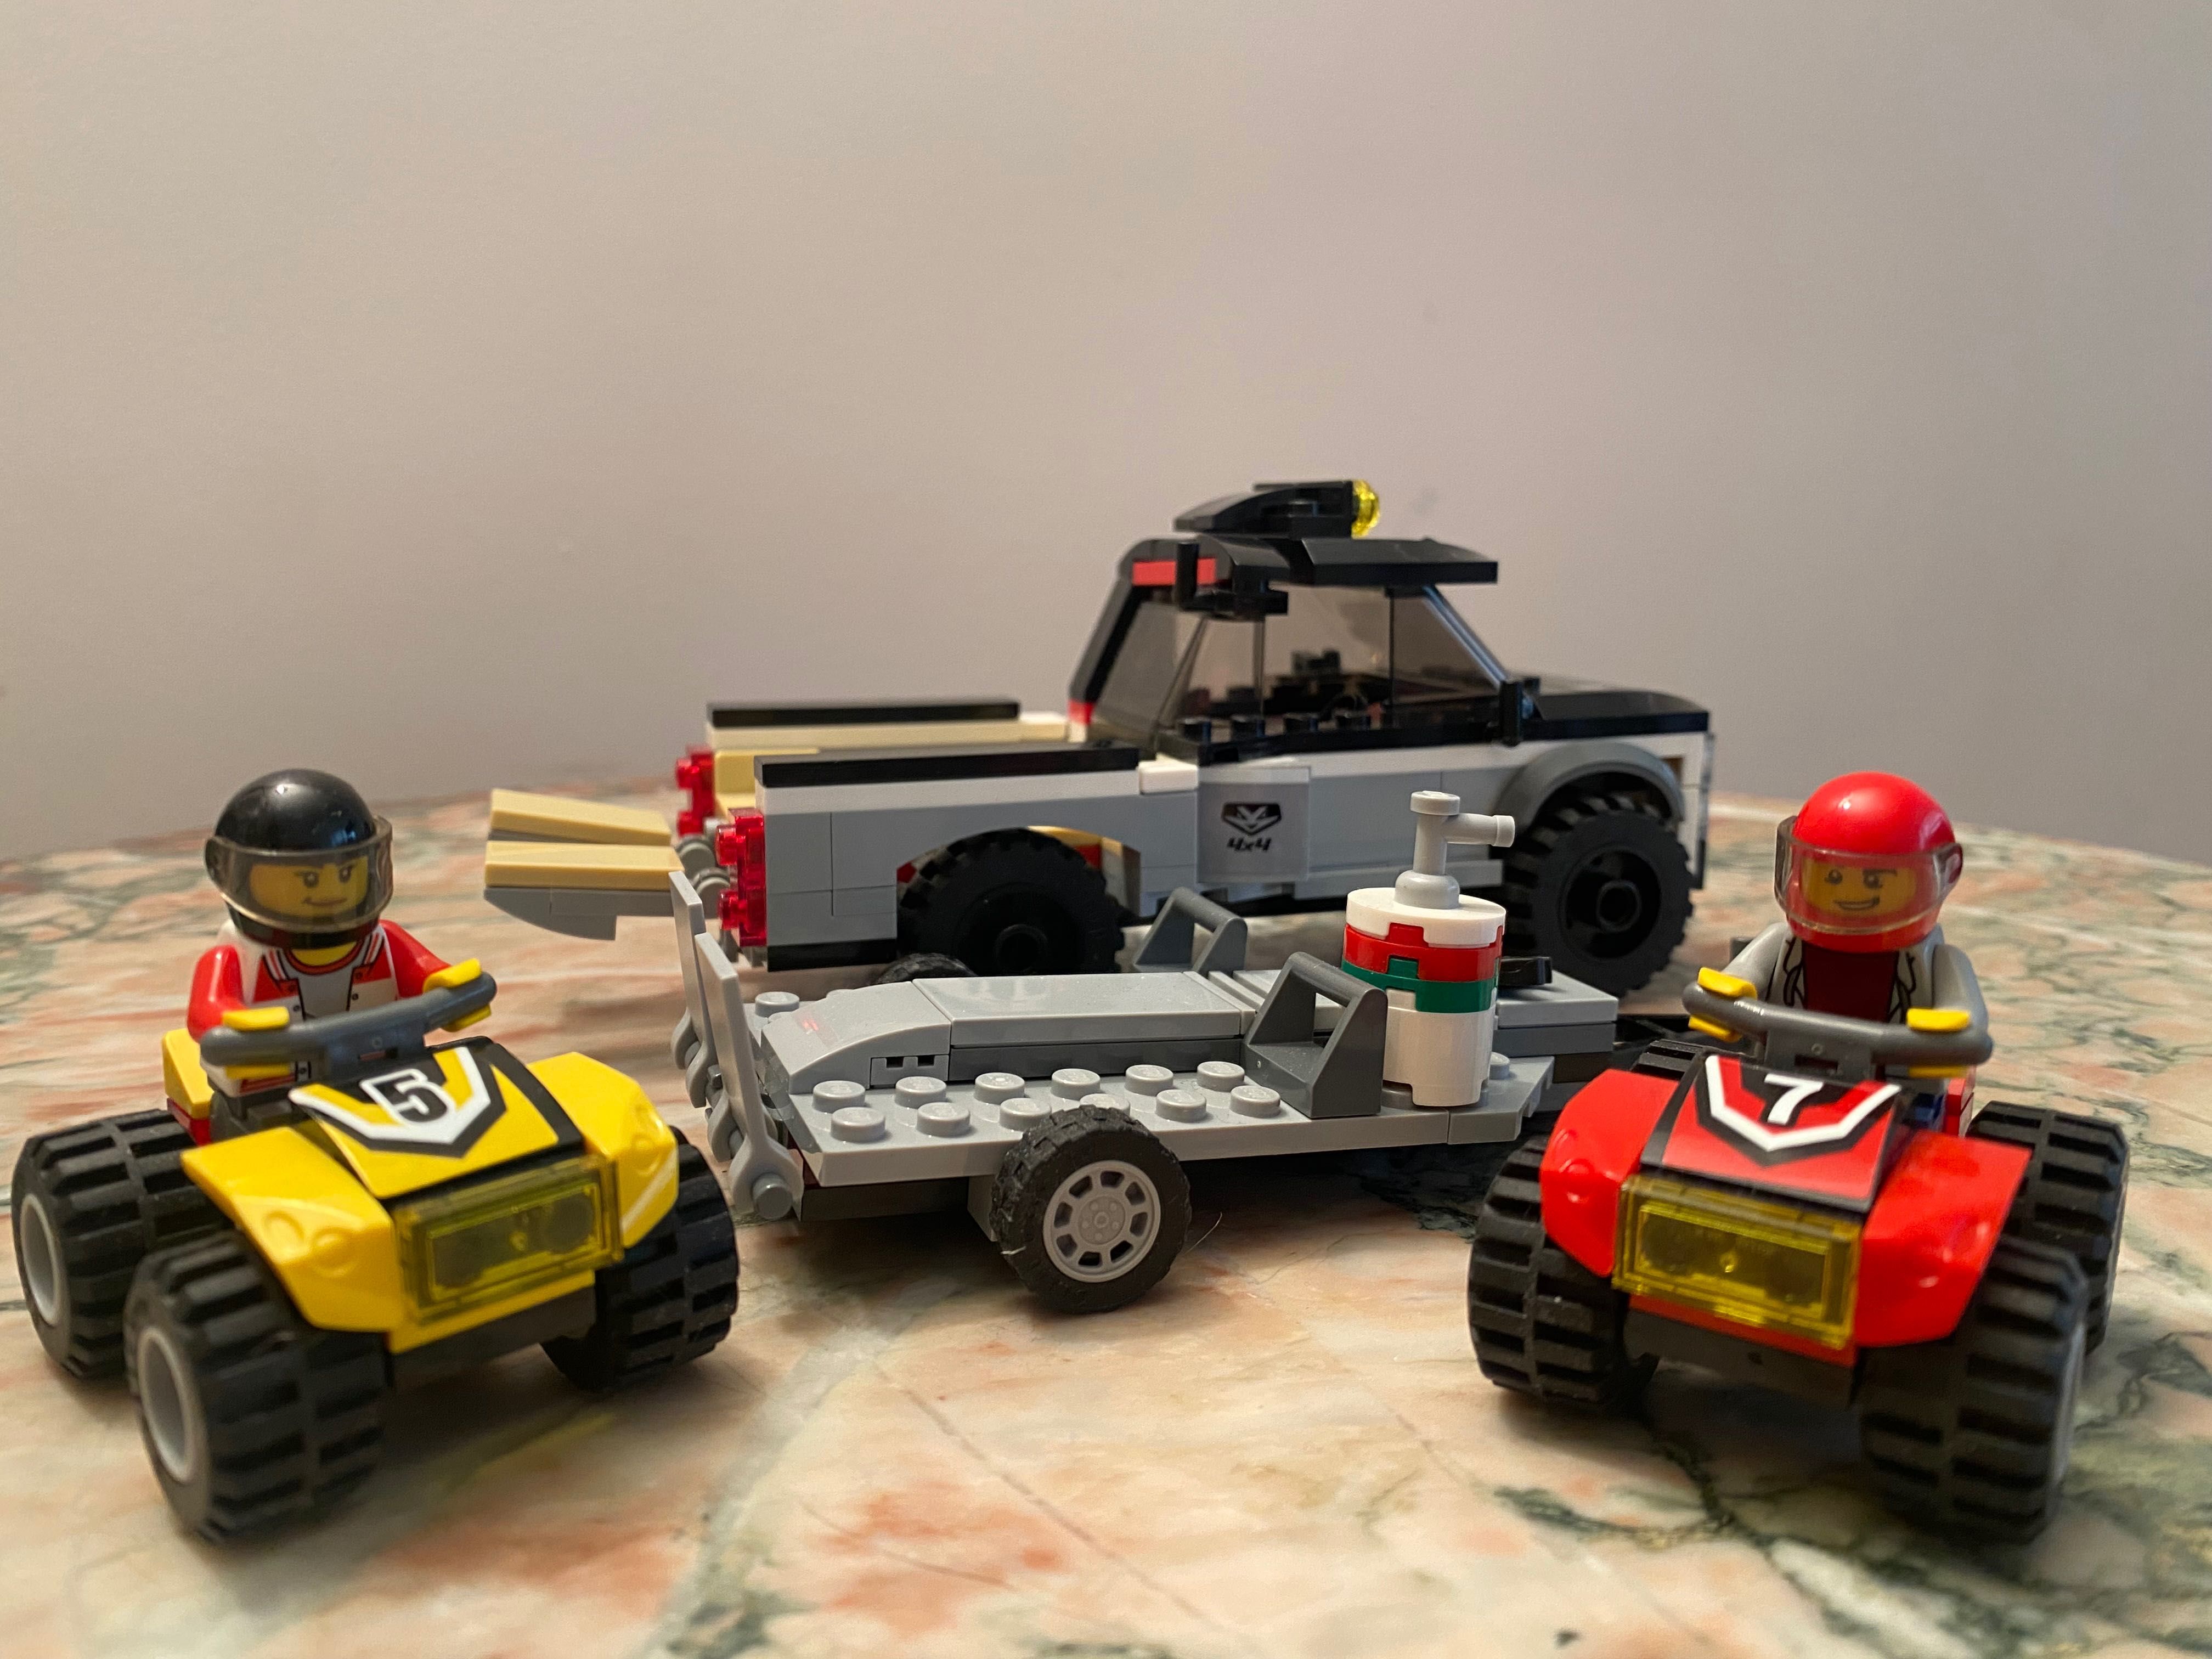 LEGO City 60148 Wyścigowy zespół quadowy